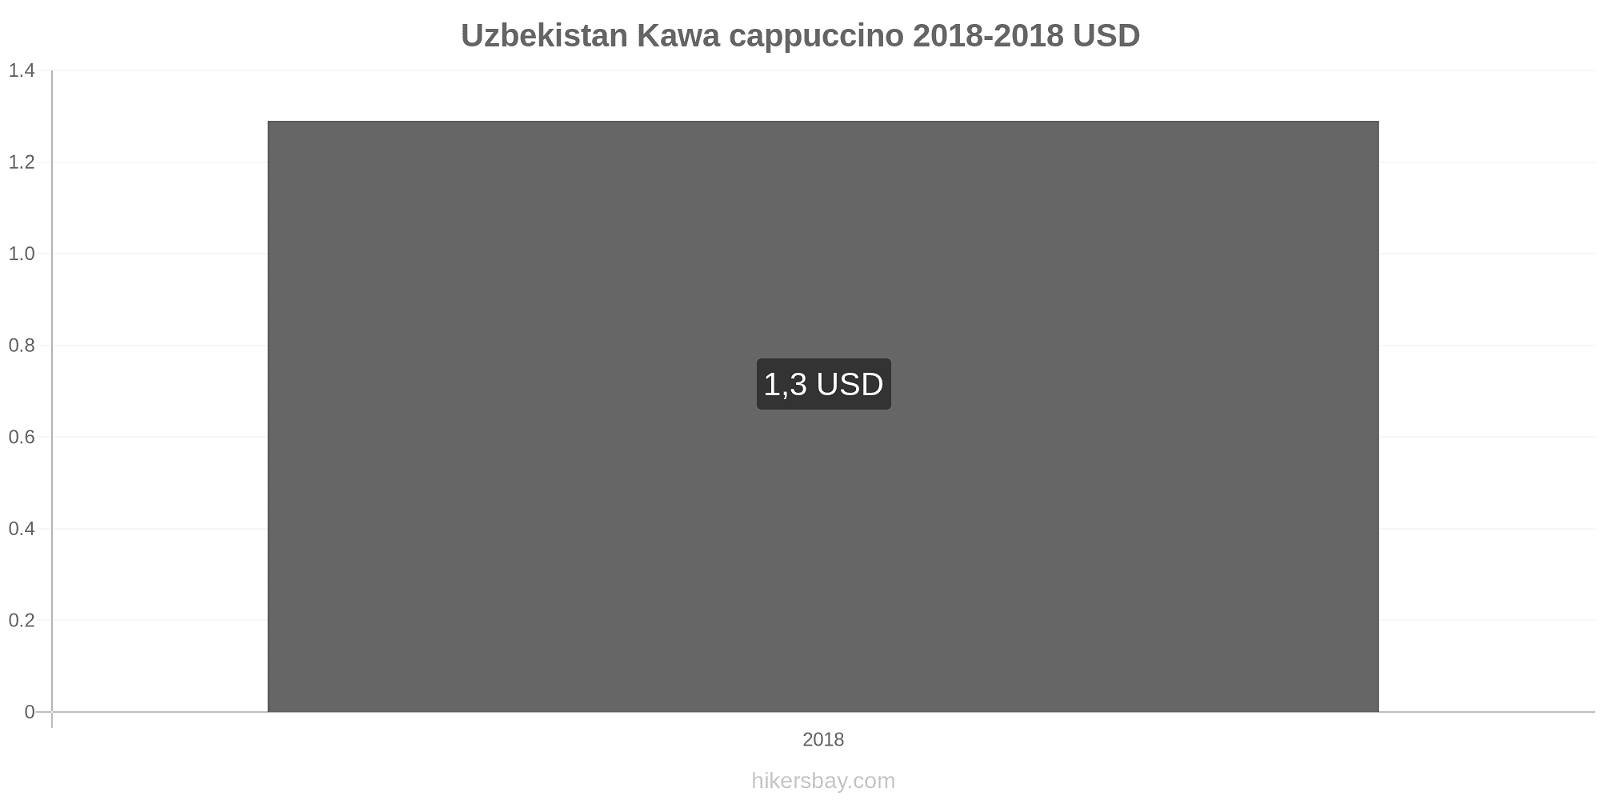 Uzbekistan zmiany cen Kawa cappuccino hikersbay.com